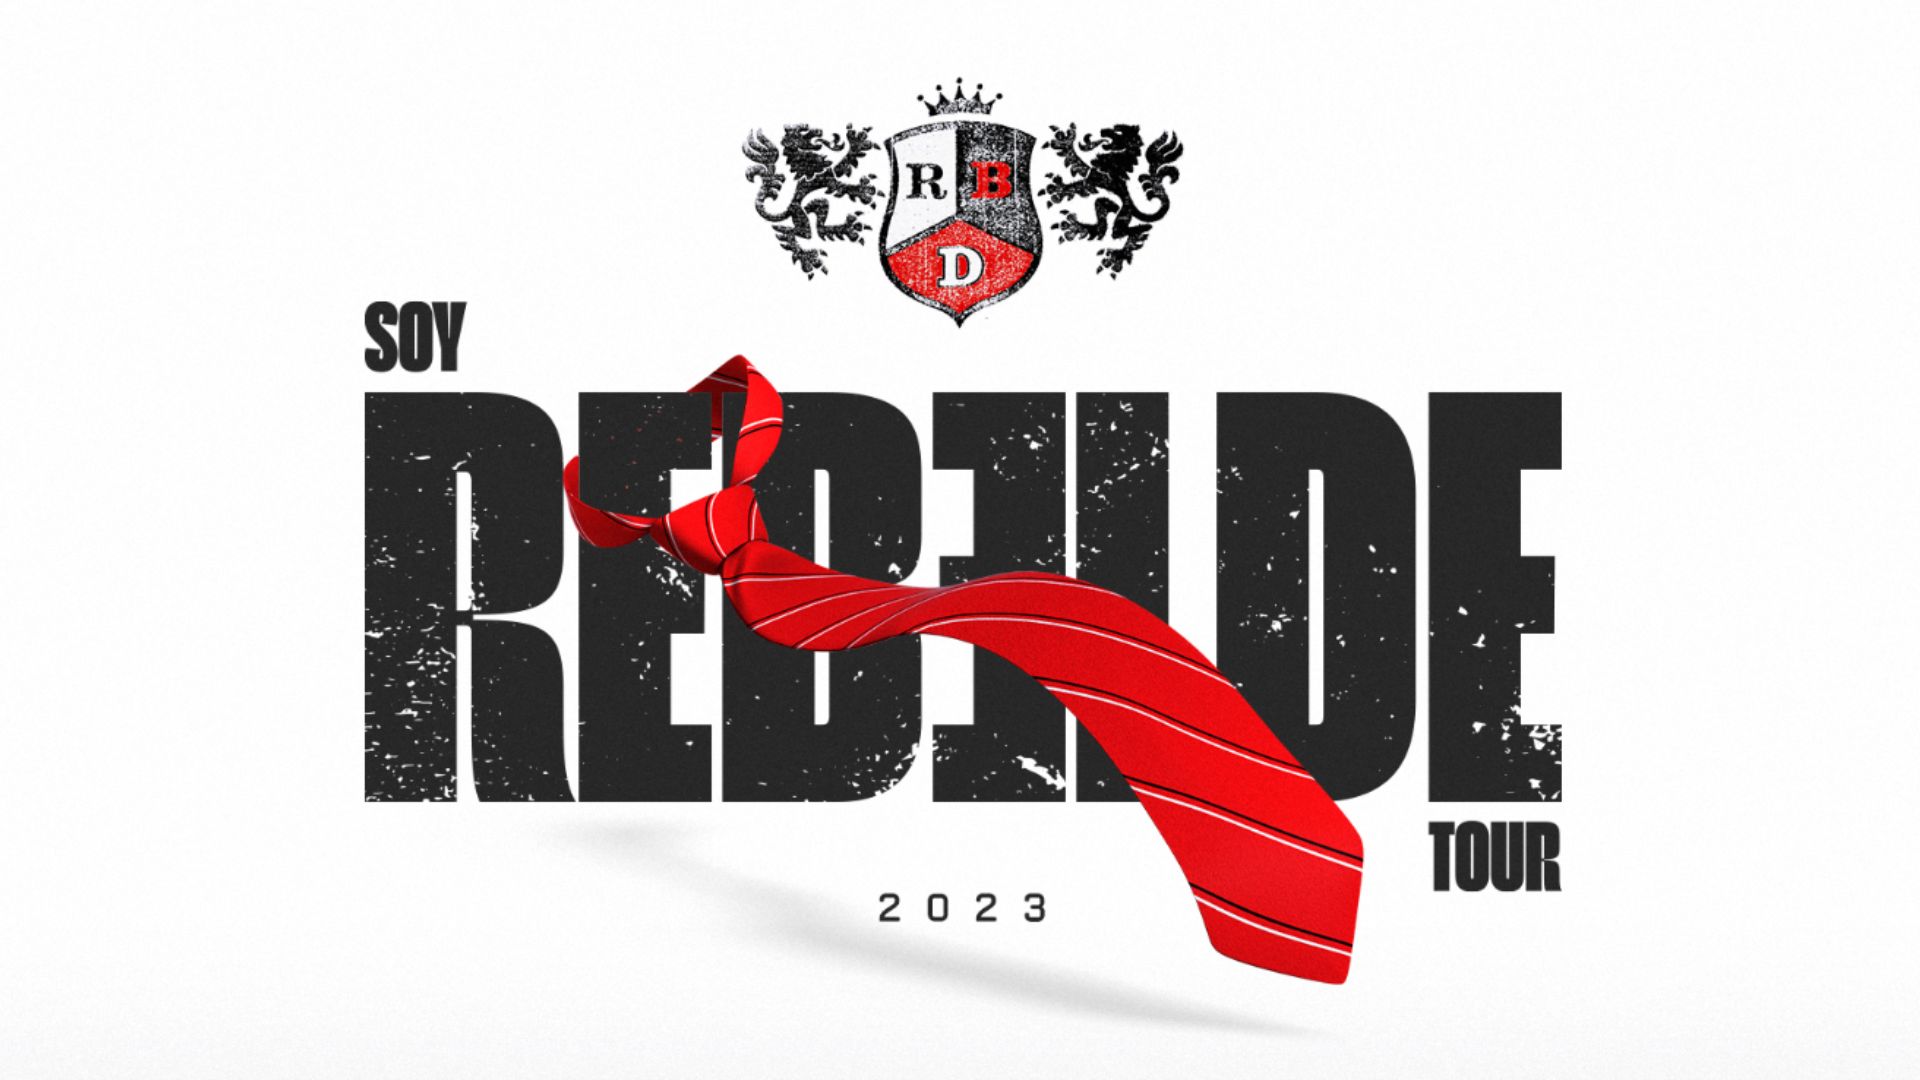 Pré-venda do show da banda RBD está marcada para acontecer nos dias 24 e 25 de janeiro - Foto: Divulgação/Soy Rebelde Tour